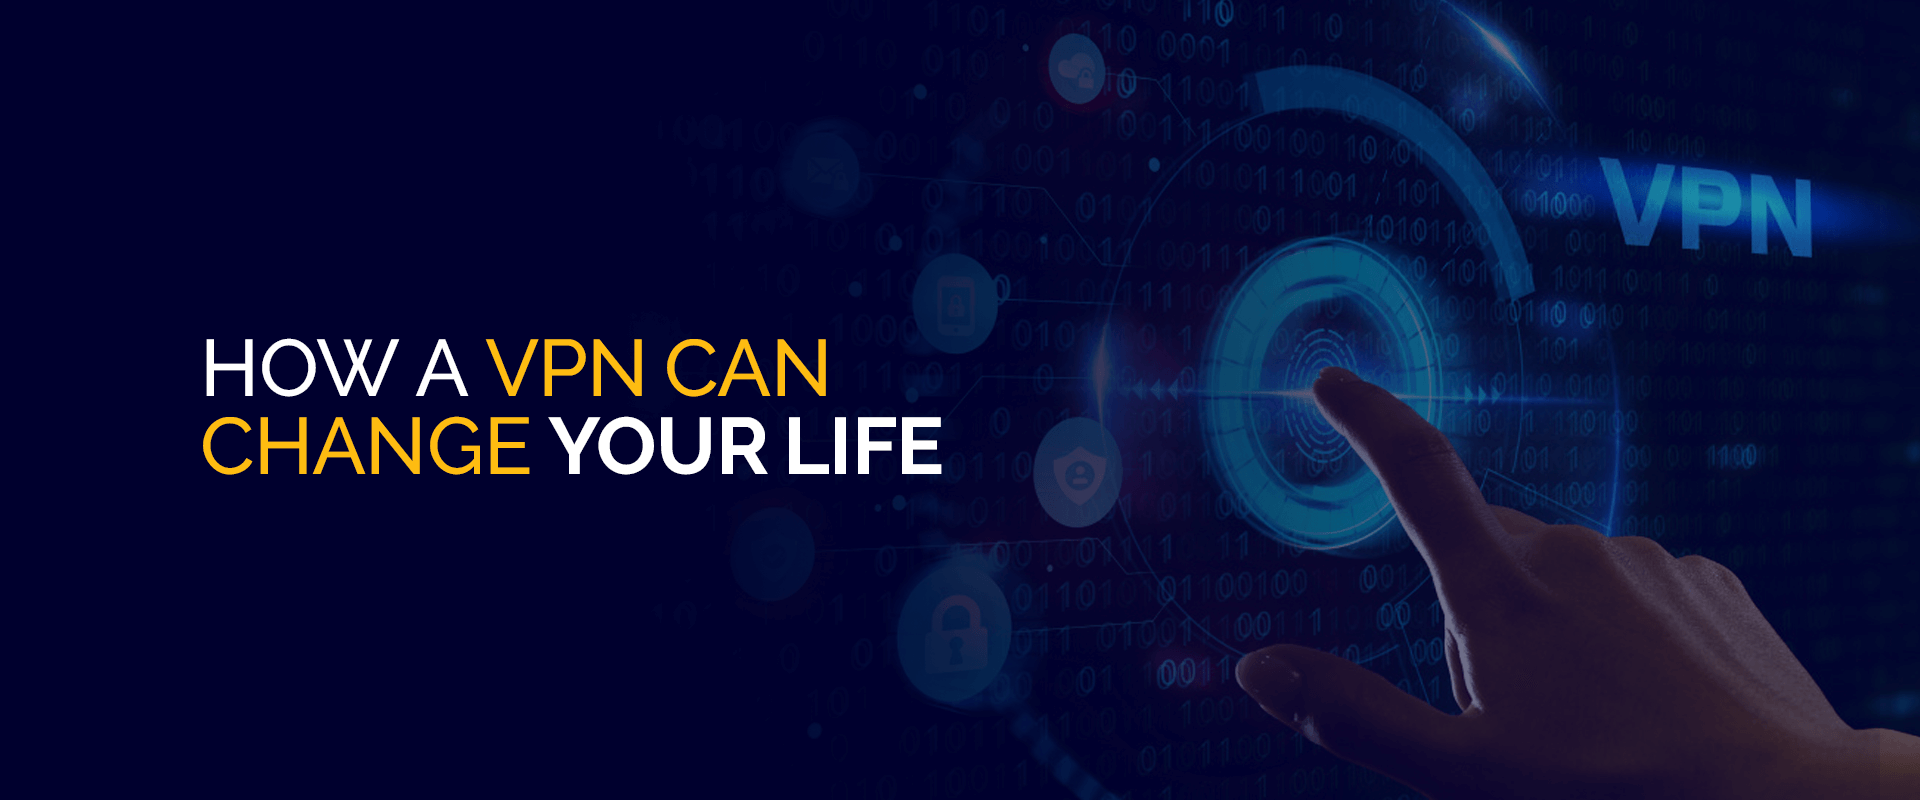 كيف يمكن لشبكة VPN أن تغير حياتك